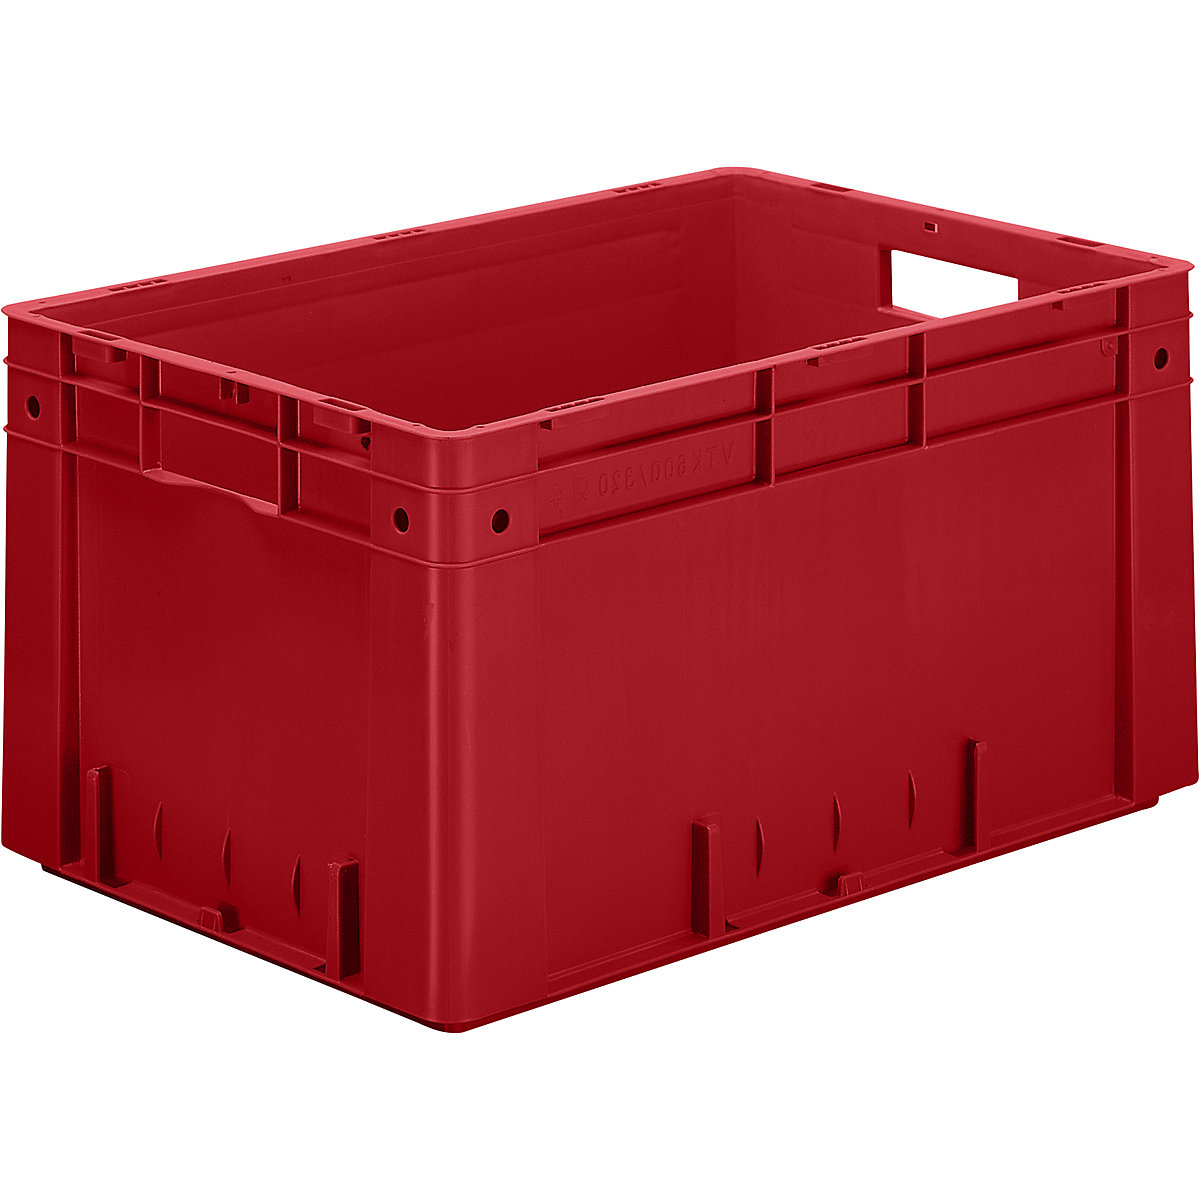 Schwerlast-Euro-Behälter, Polypropylen, Volumen 60 l, LxBxH 600 x 400 x 320 mm, Wände geschlossen, Boden geschlossen, rot, VE 2 Stk-5